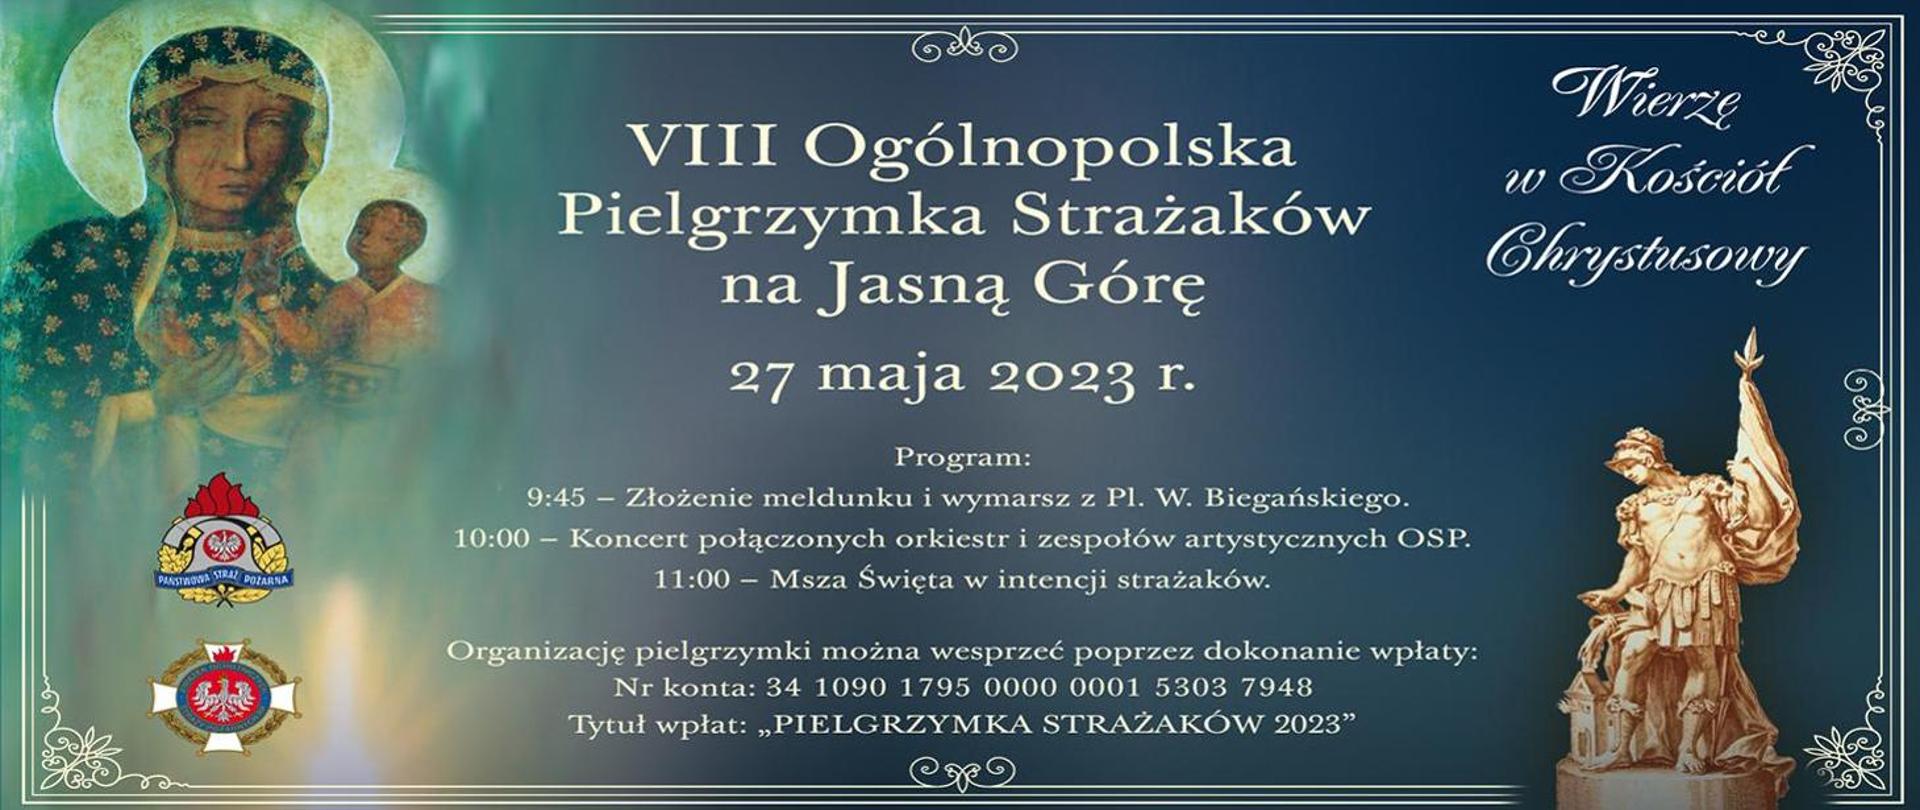 Plakat z informacją o Ogólnopolskiej Pielgrzymce Strażaków na Jasną Górę